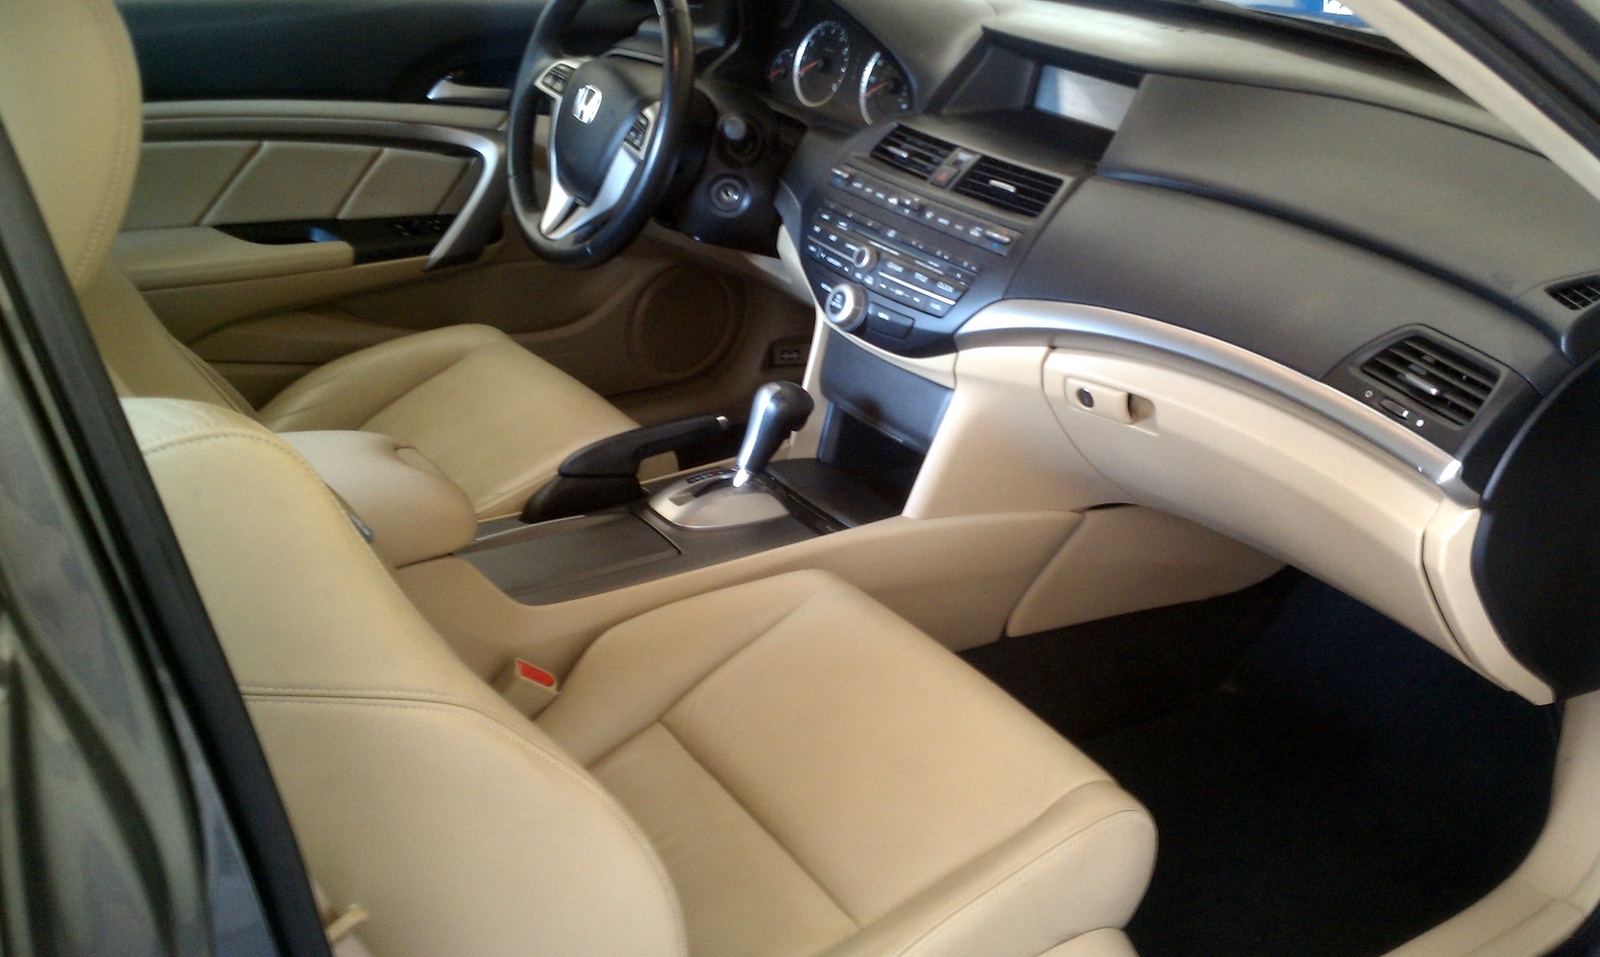 2008 Honda accord sedan trunk space #4